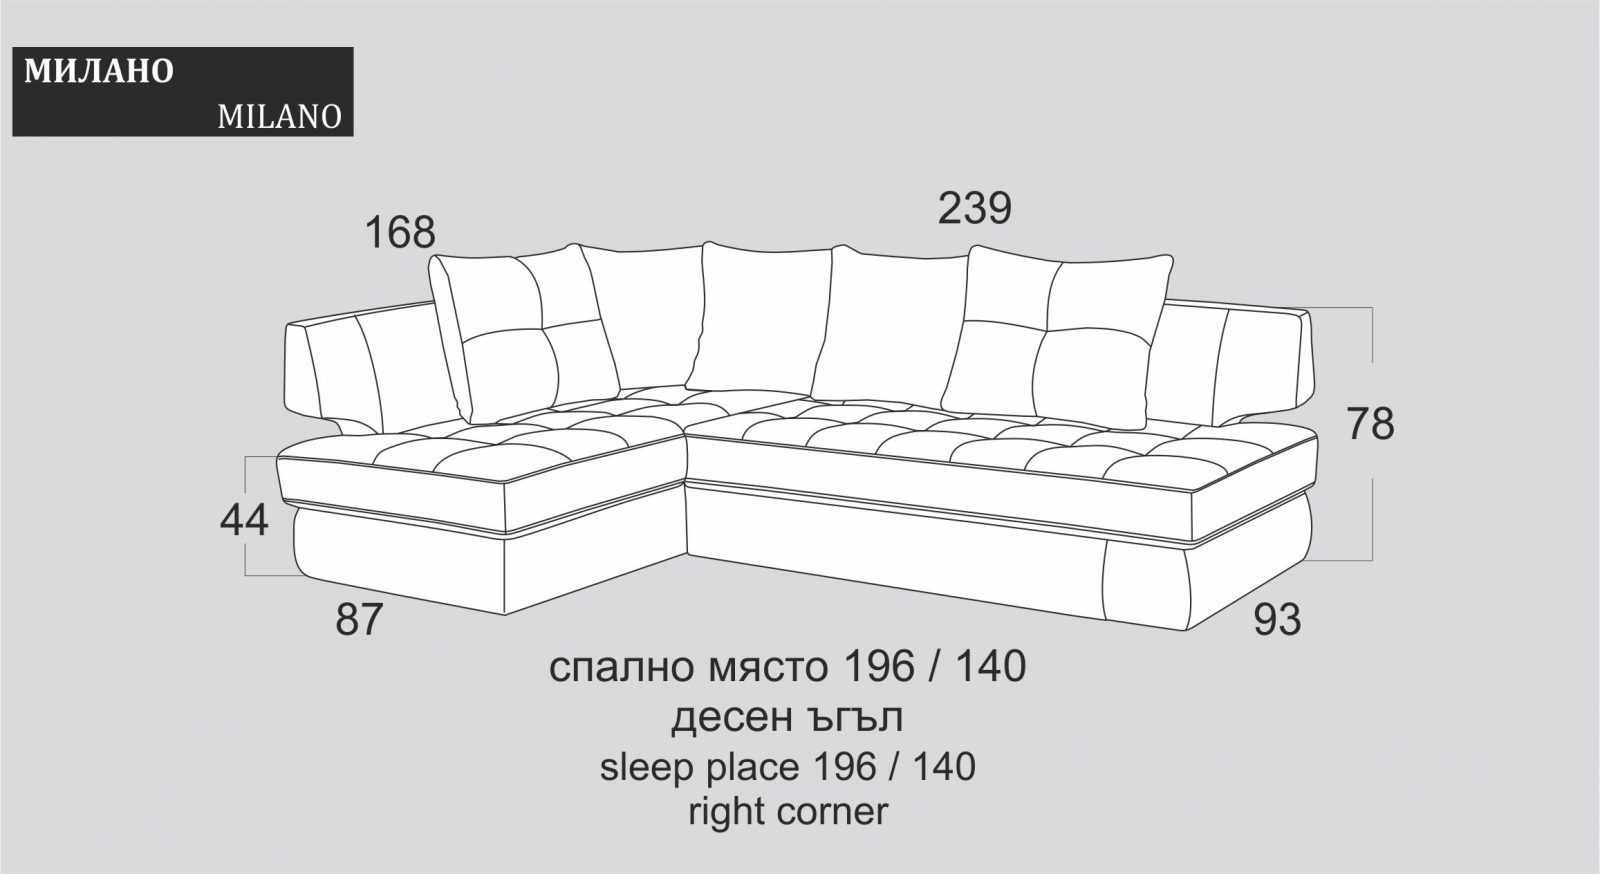 (Български) Разтегателен ъглов диван |”МИЛАНО”| Руди-Ан